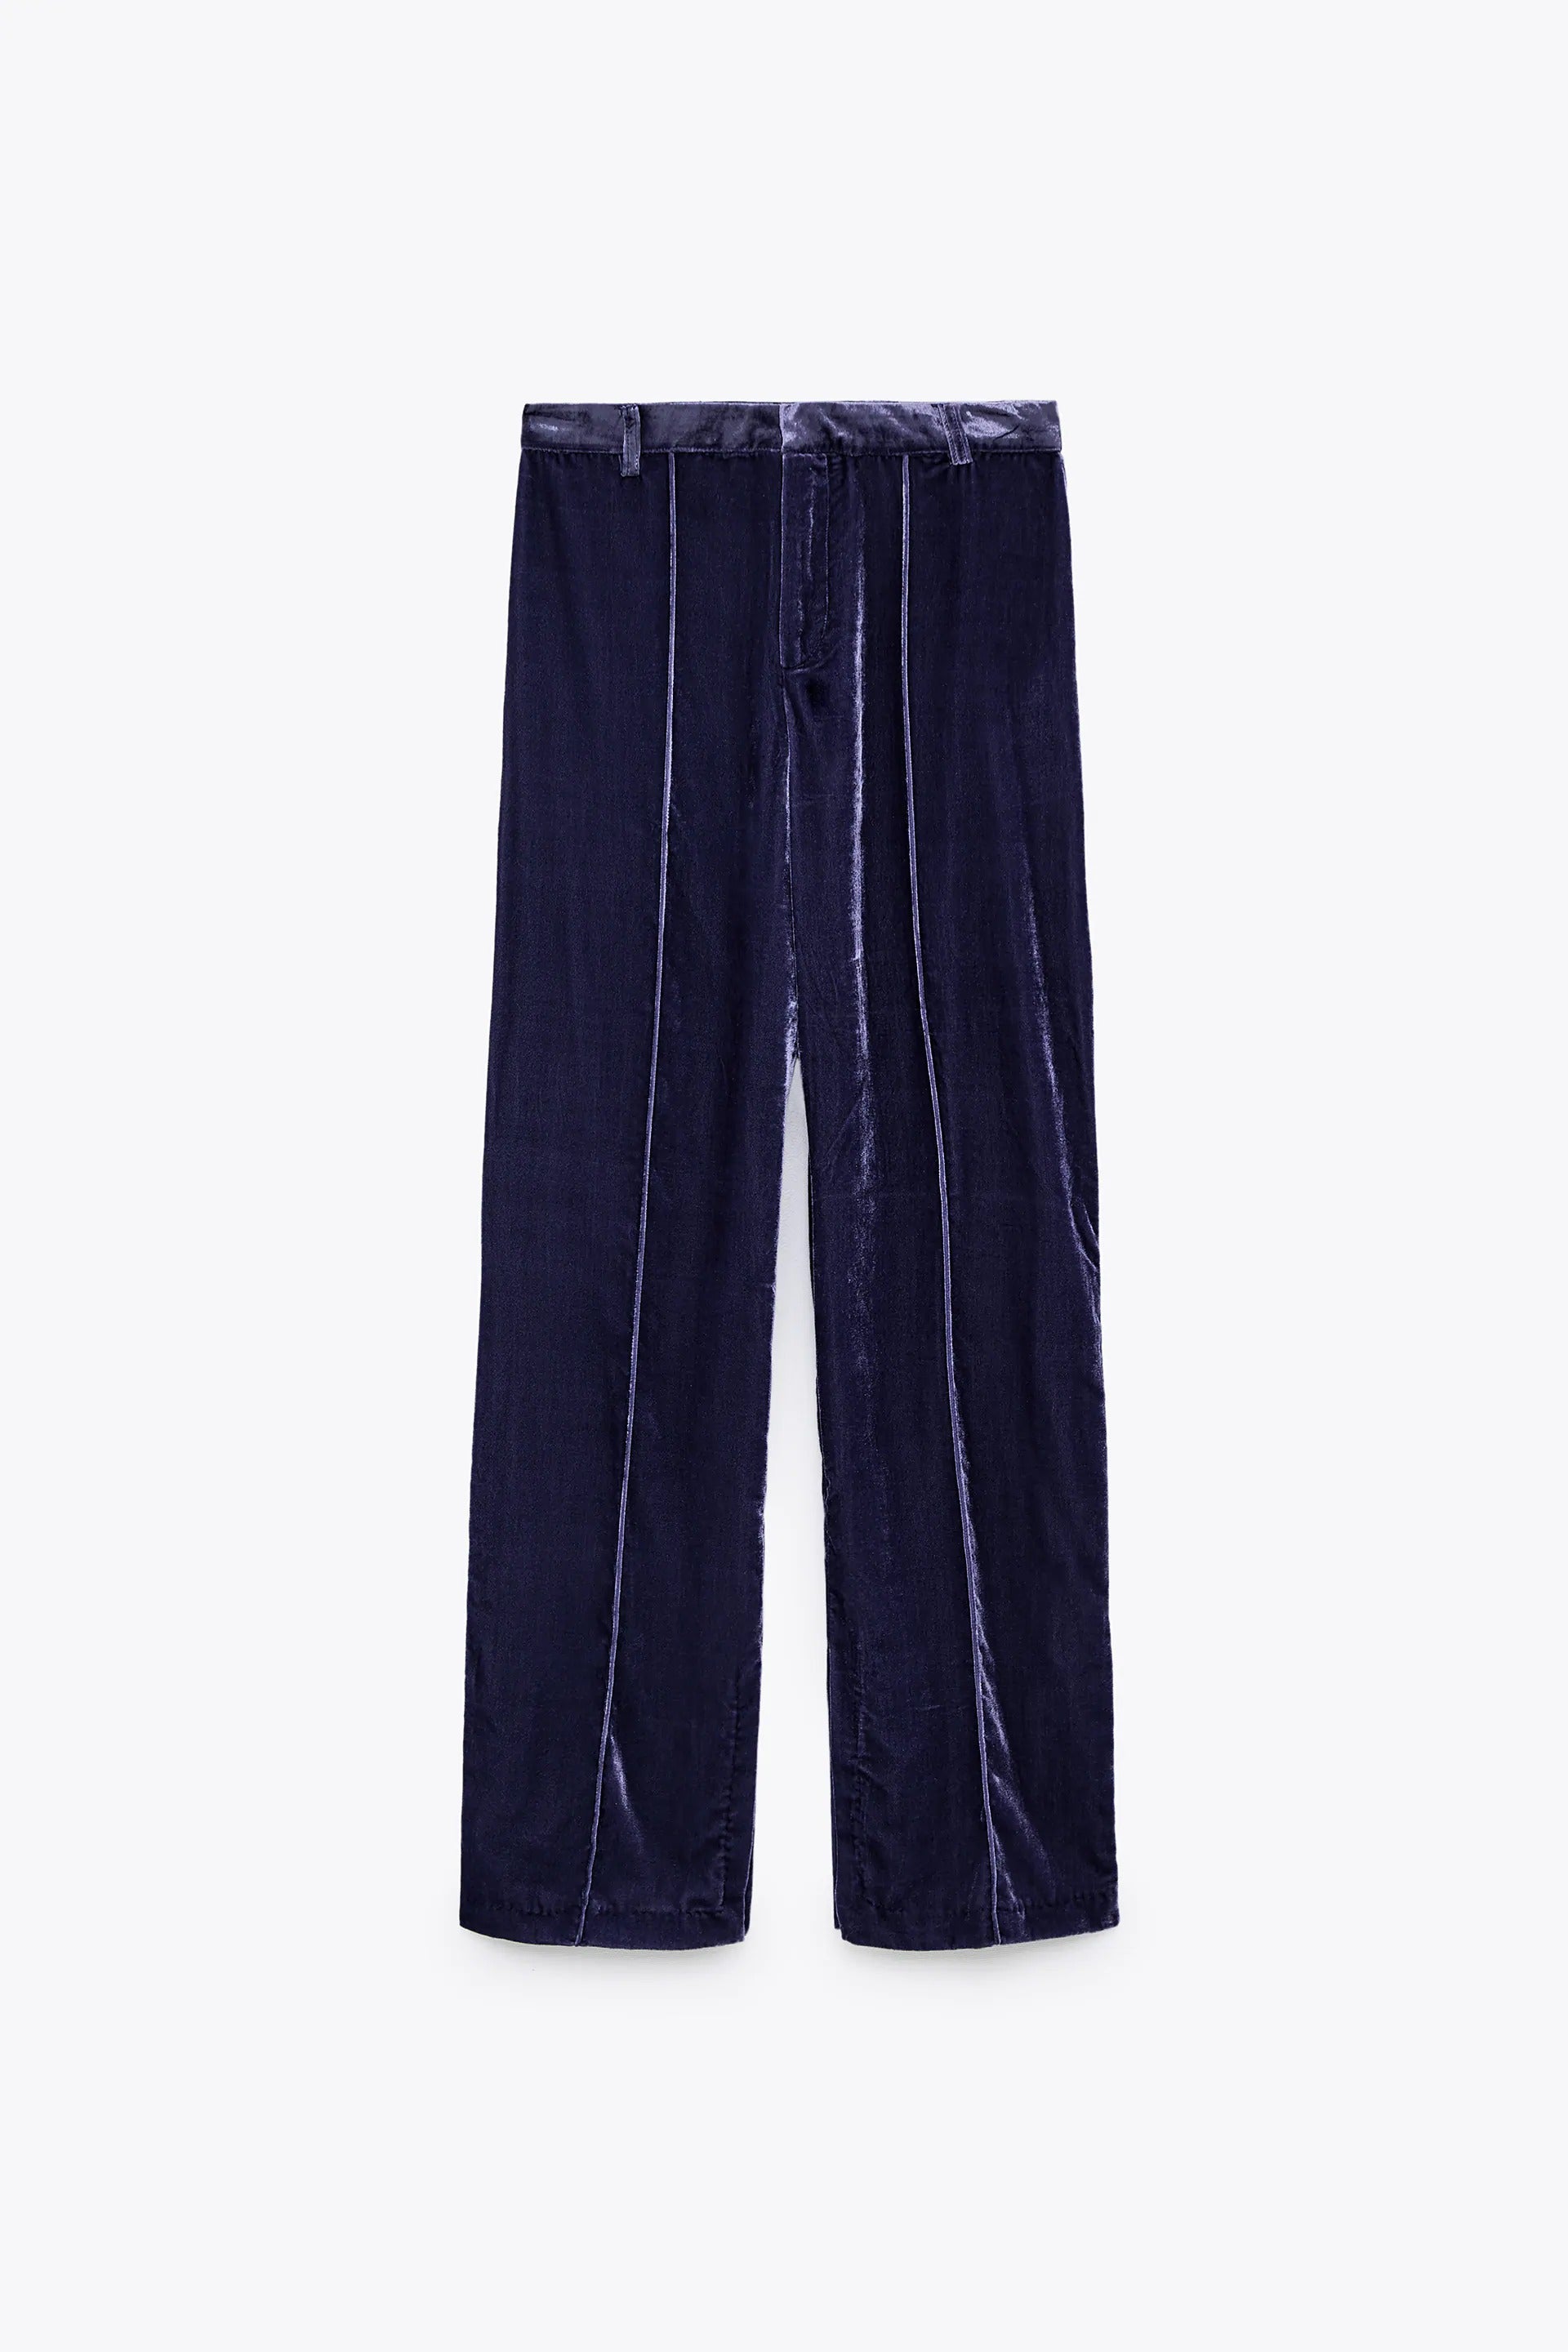 Zara Blue Mulberry Silk Blend Velvet Wide Leg Trousers M UK12 BNWT  eBay